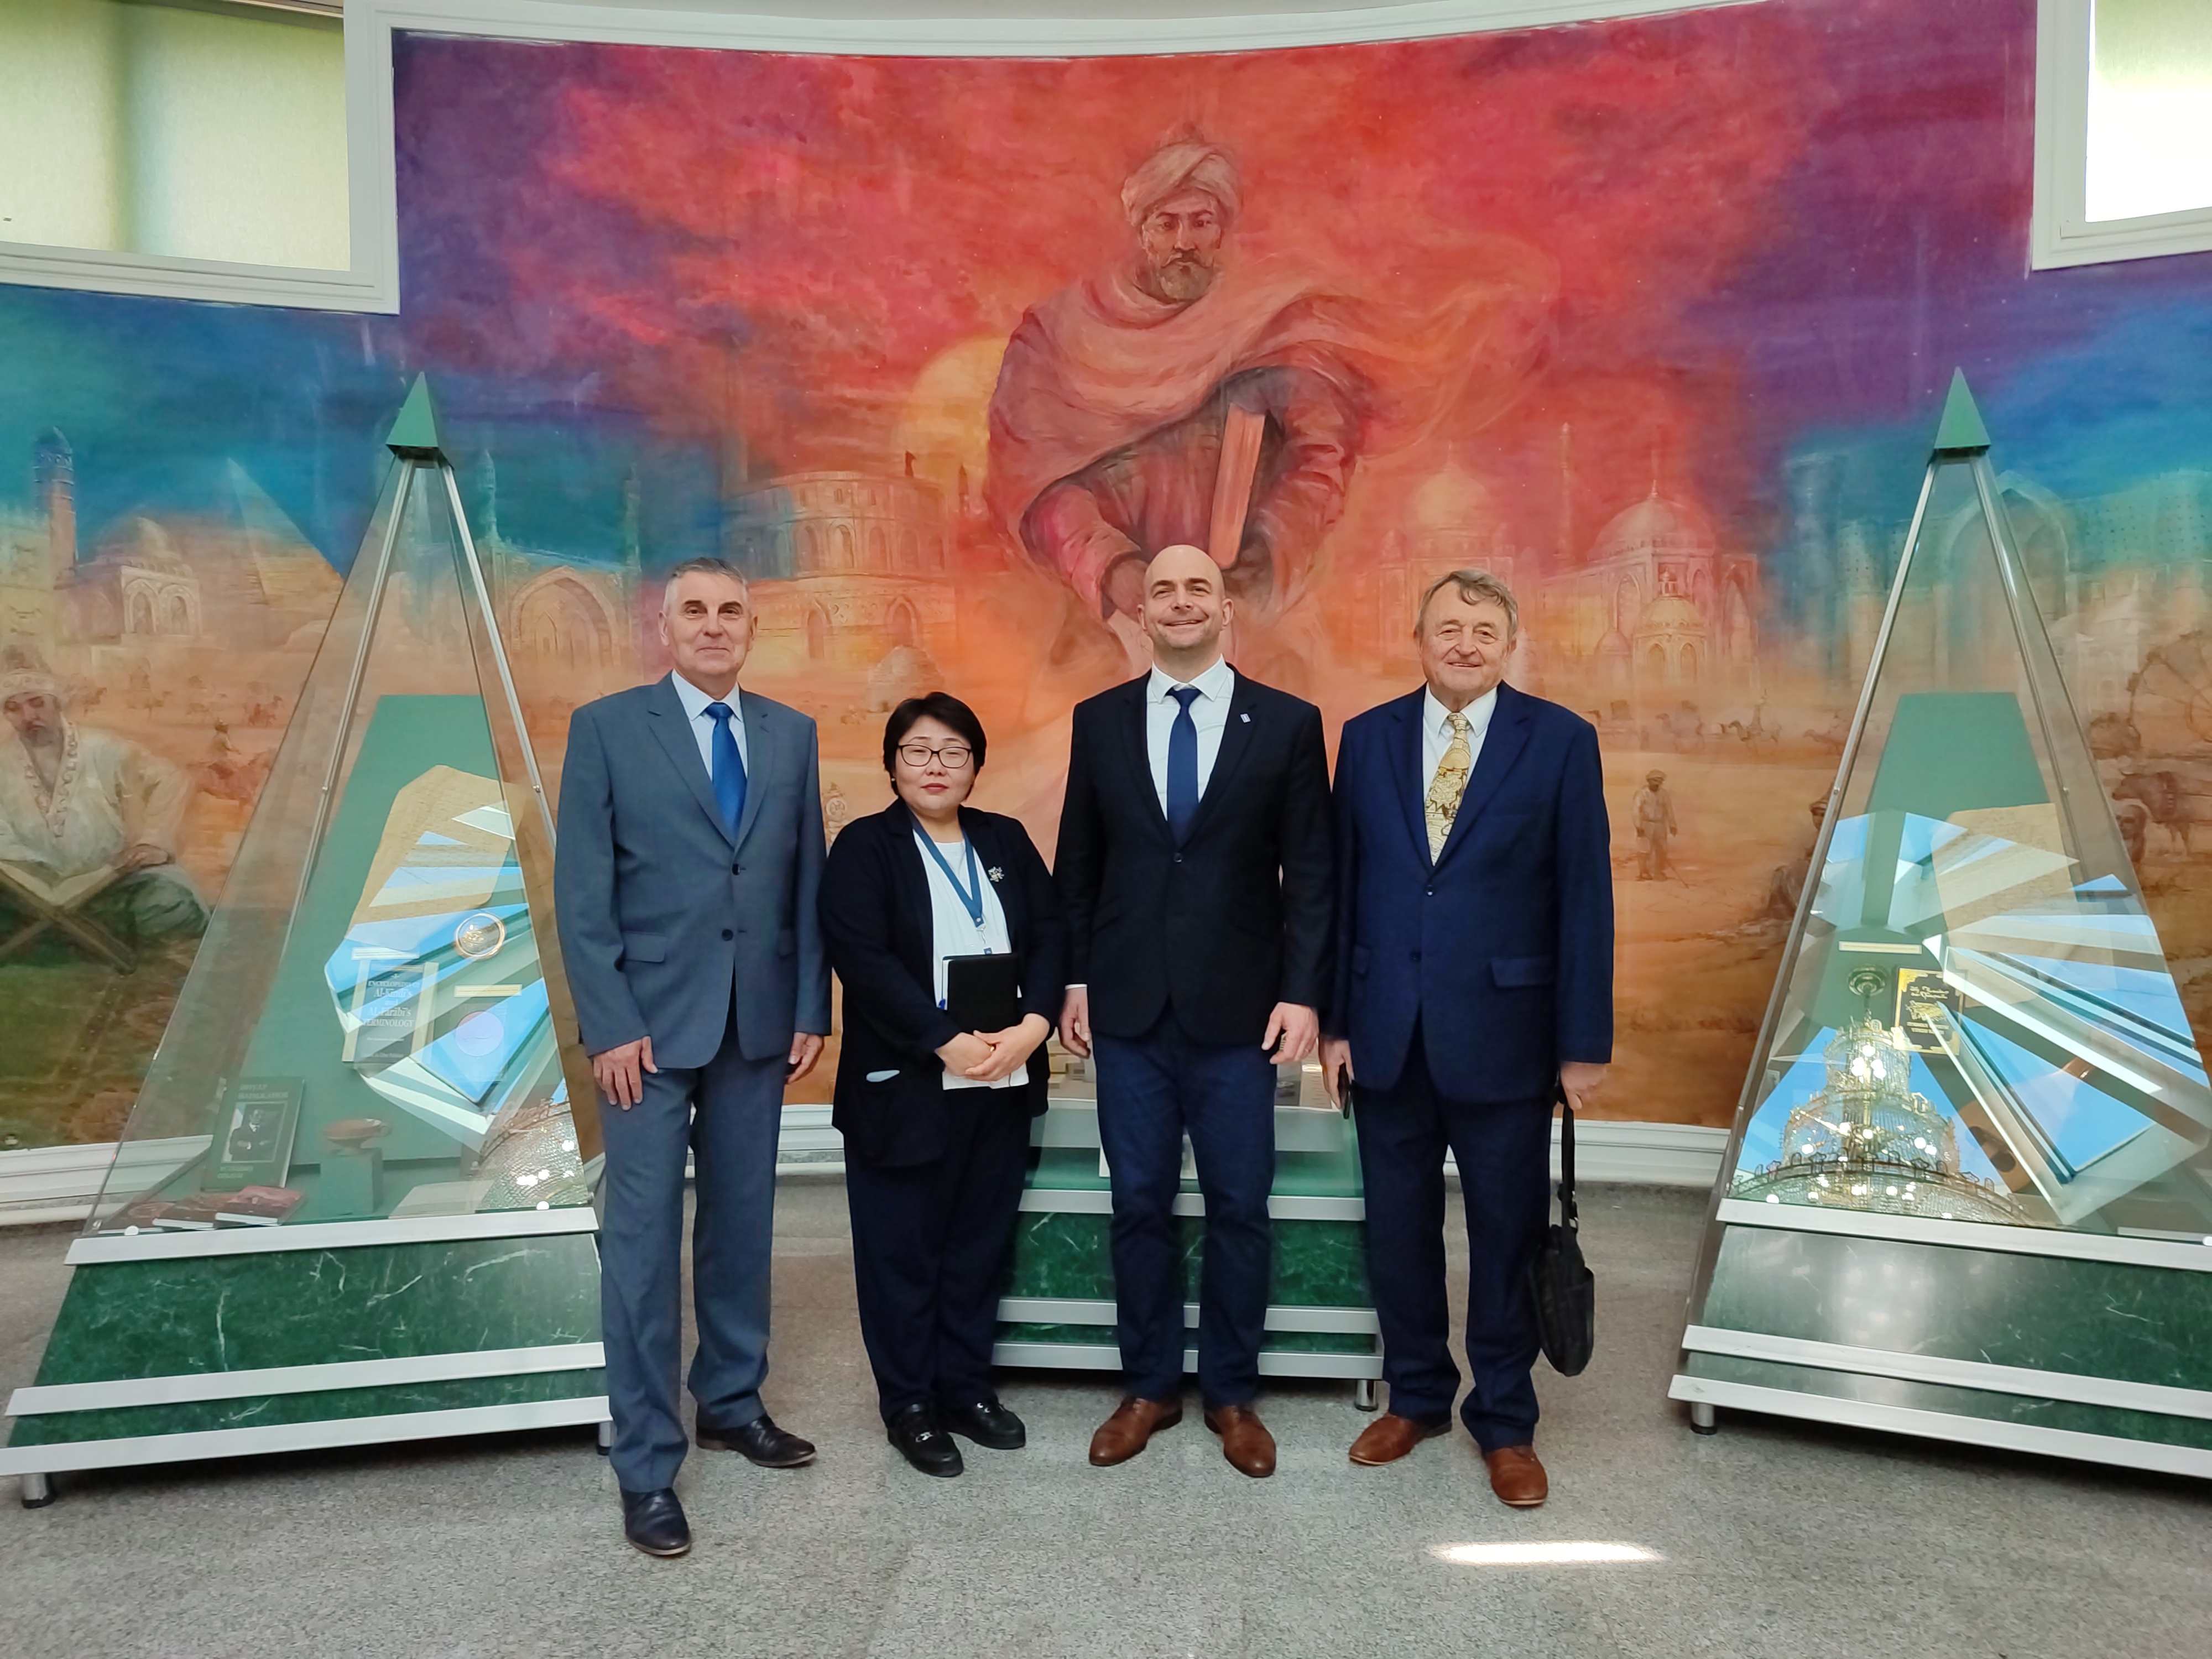 Делегация во главе с чрезвычайным и полномочным послом Чешской Республики в Казахстане Павлом Шепеляком посетили музей университета